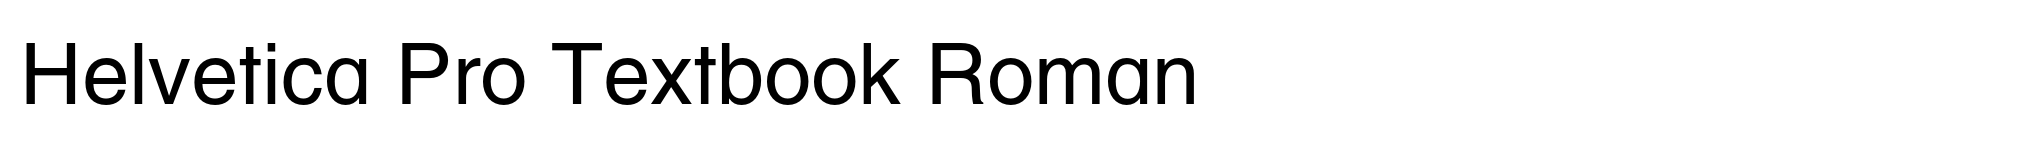 Helvetica Pro Textbook Roman image